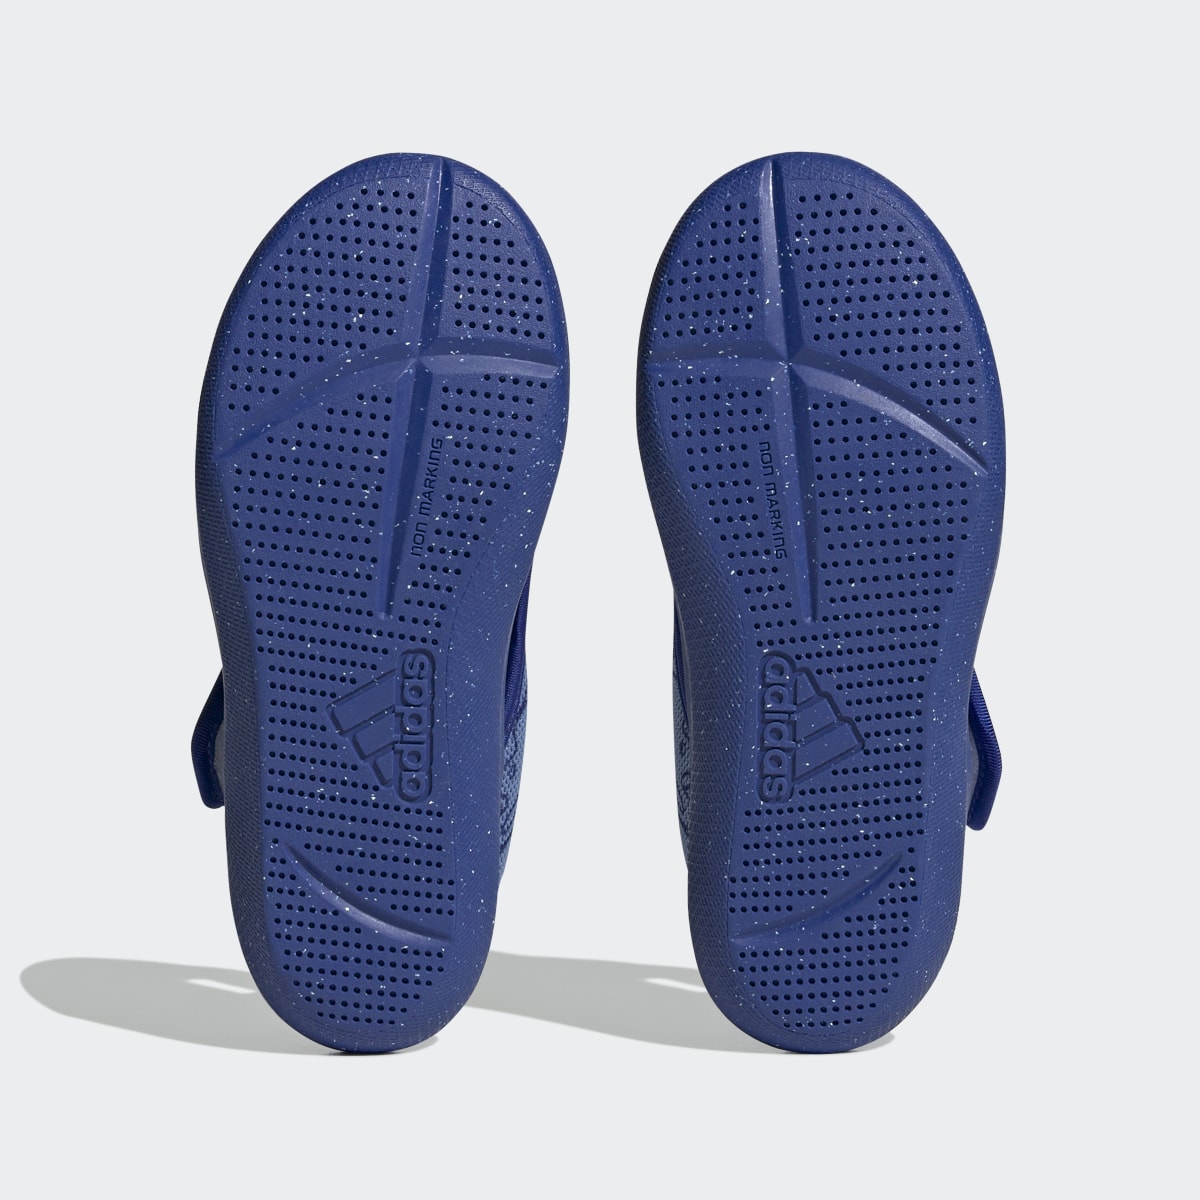 Adidas x Disney AltaVenture 2.0 Finding Nemo Swim Sandals. 4